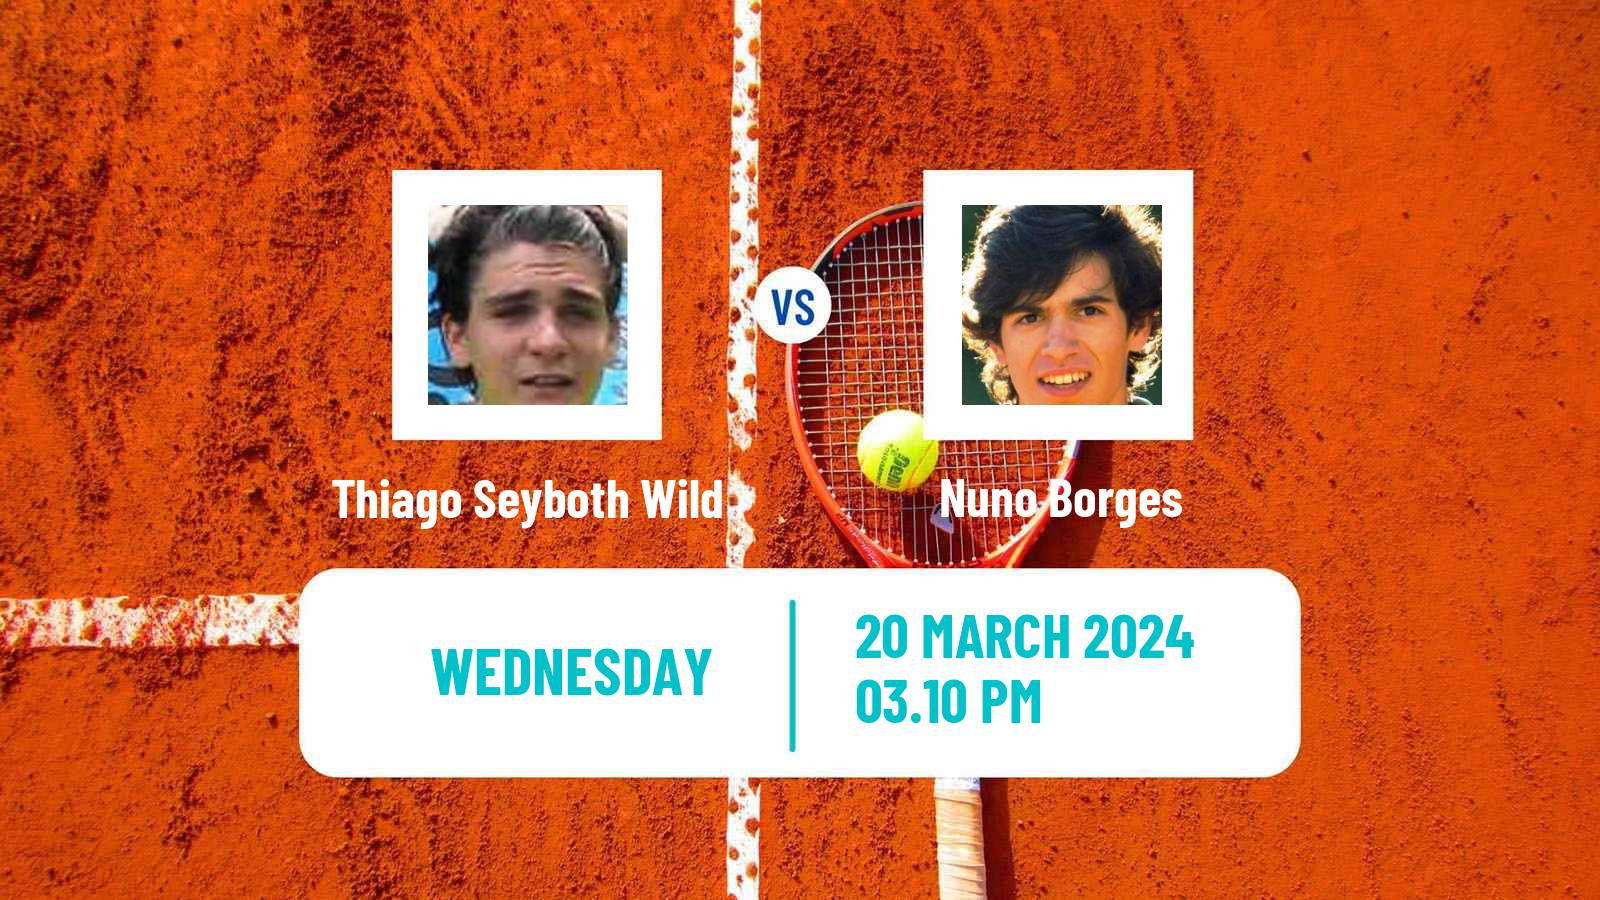 Tennis ATP Miami Thiago Seyboth Wild - Nuno Borges